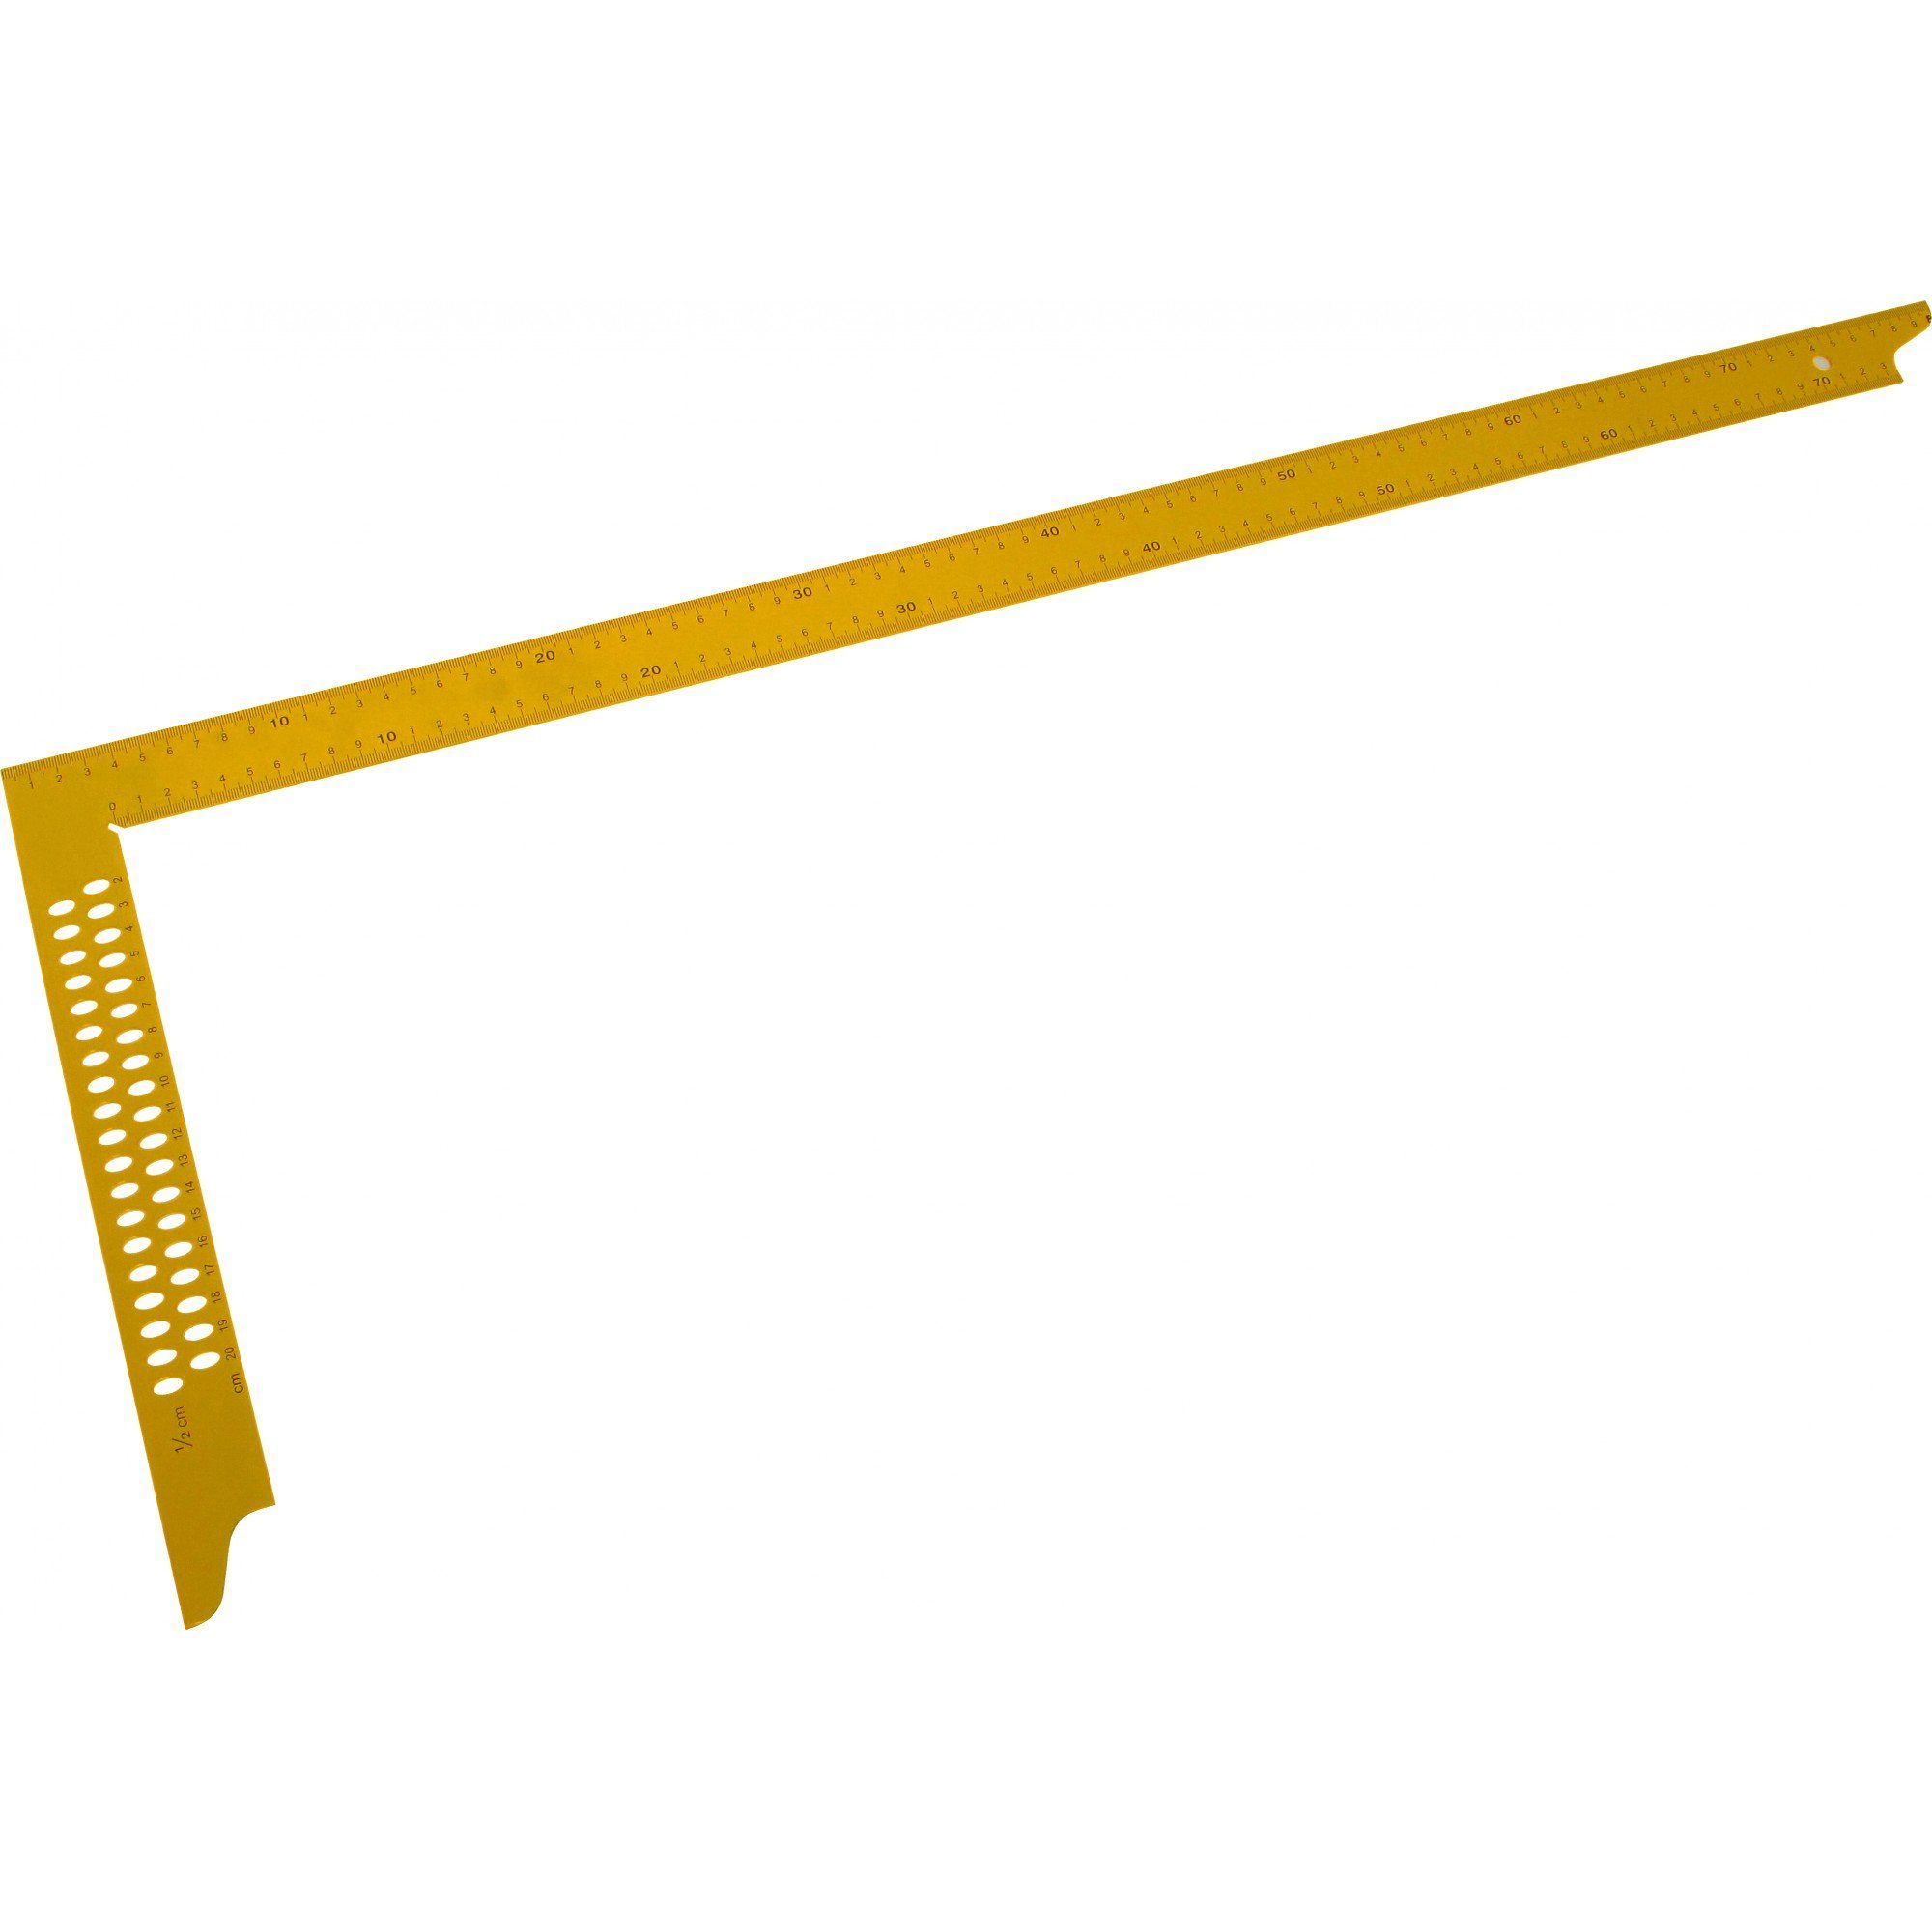 und Maßeinteilung gelb Triuso Anreißlöchern lackiert, mm Winkel 800 Zimmermannswinkel mit